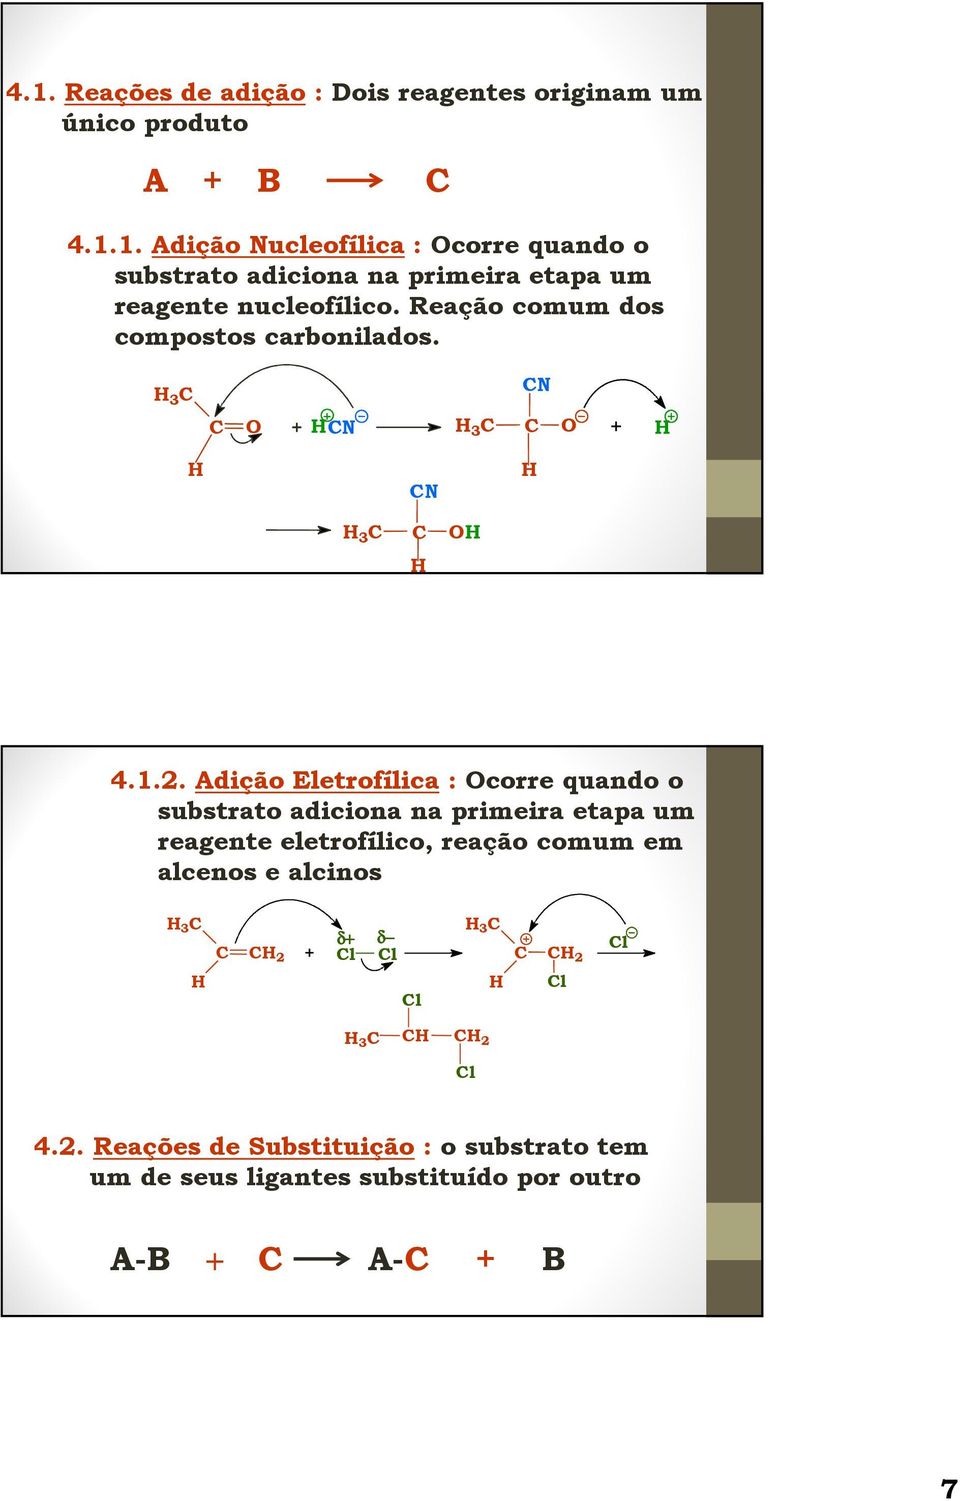 Adição Eletrofílica : corre quando o substrato adiciona na primeira etapa um reagente eletrofílico, reação comum em alcenos